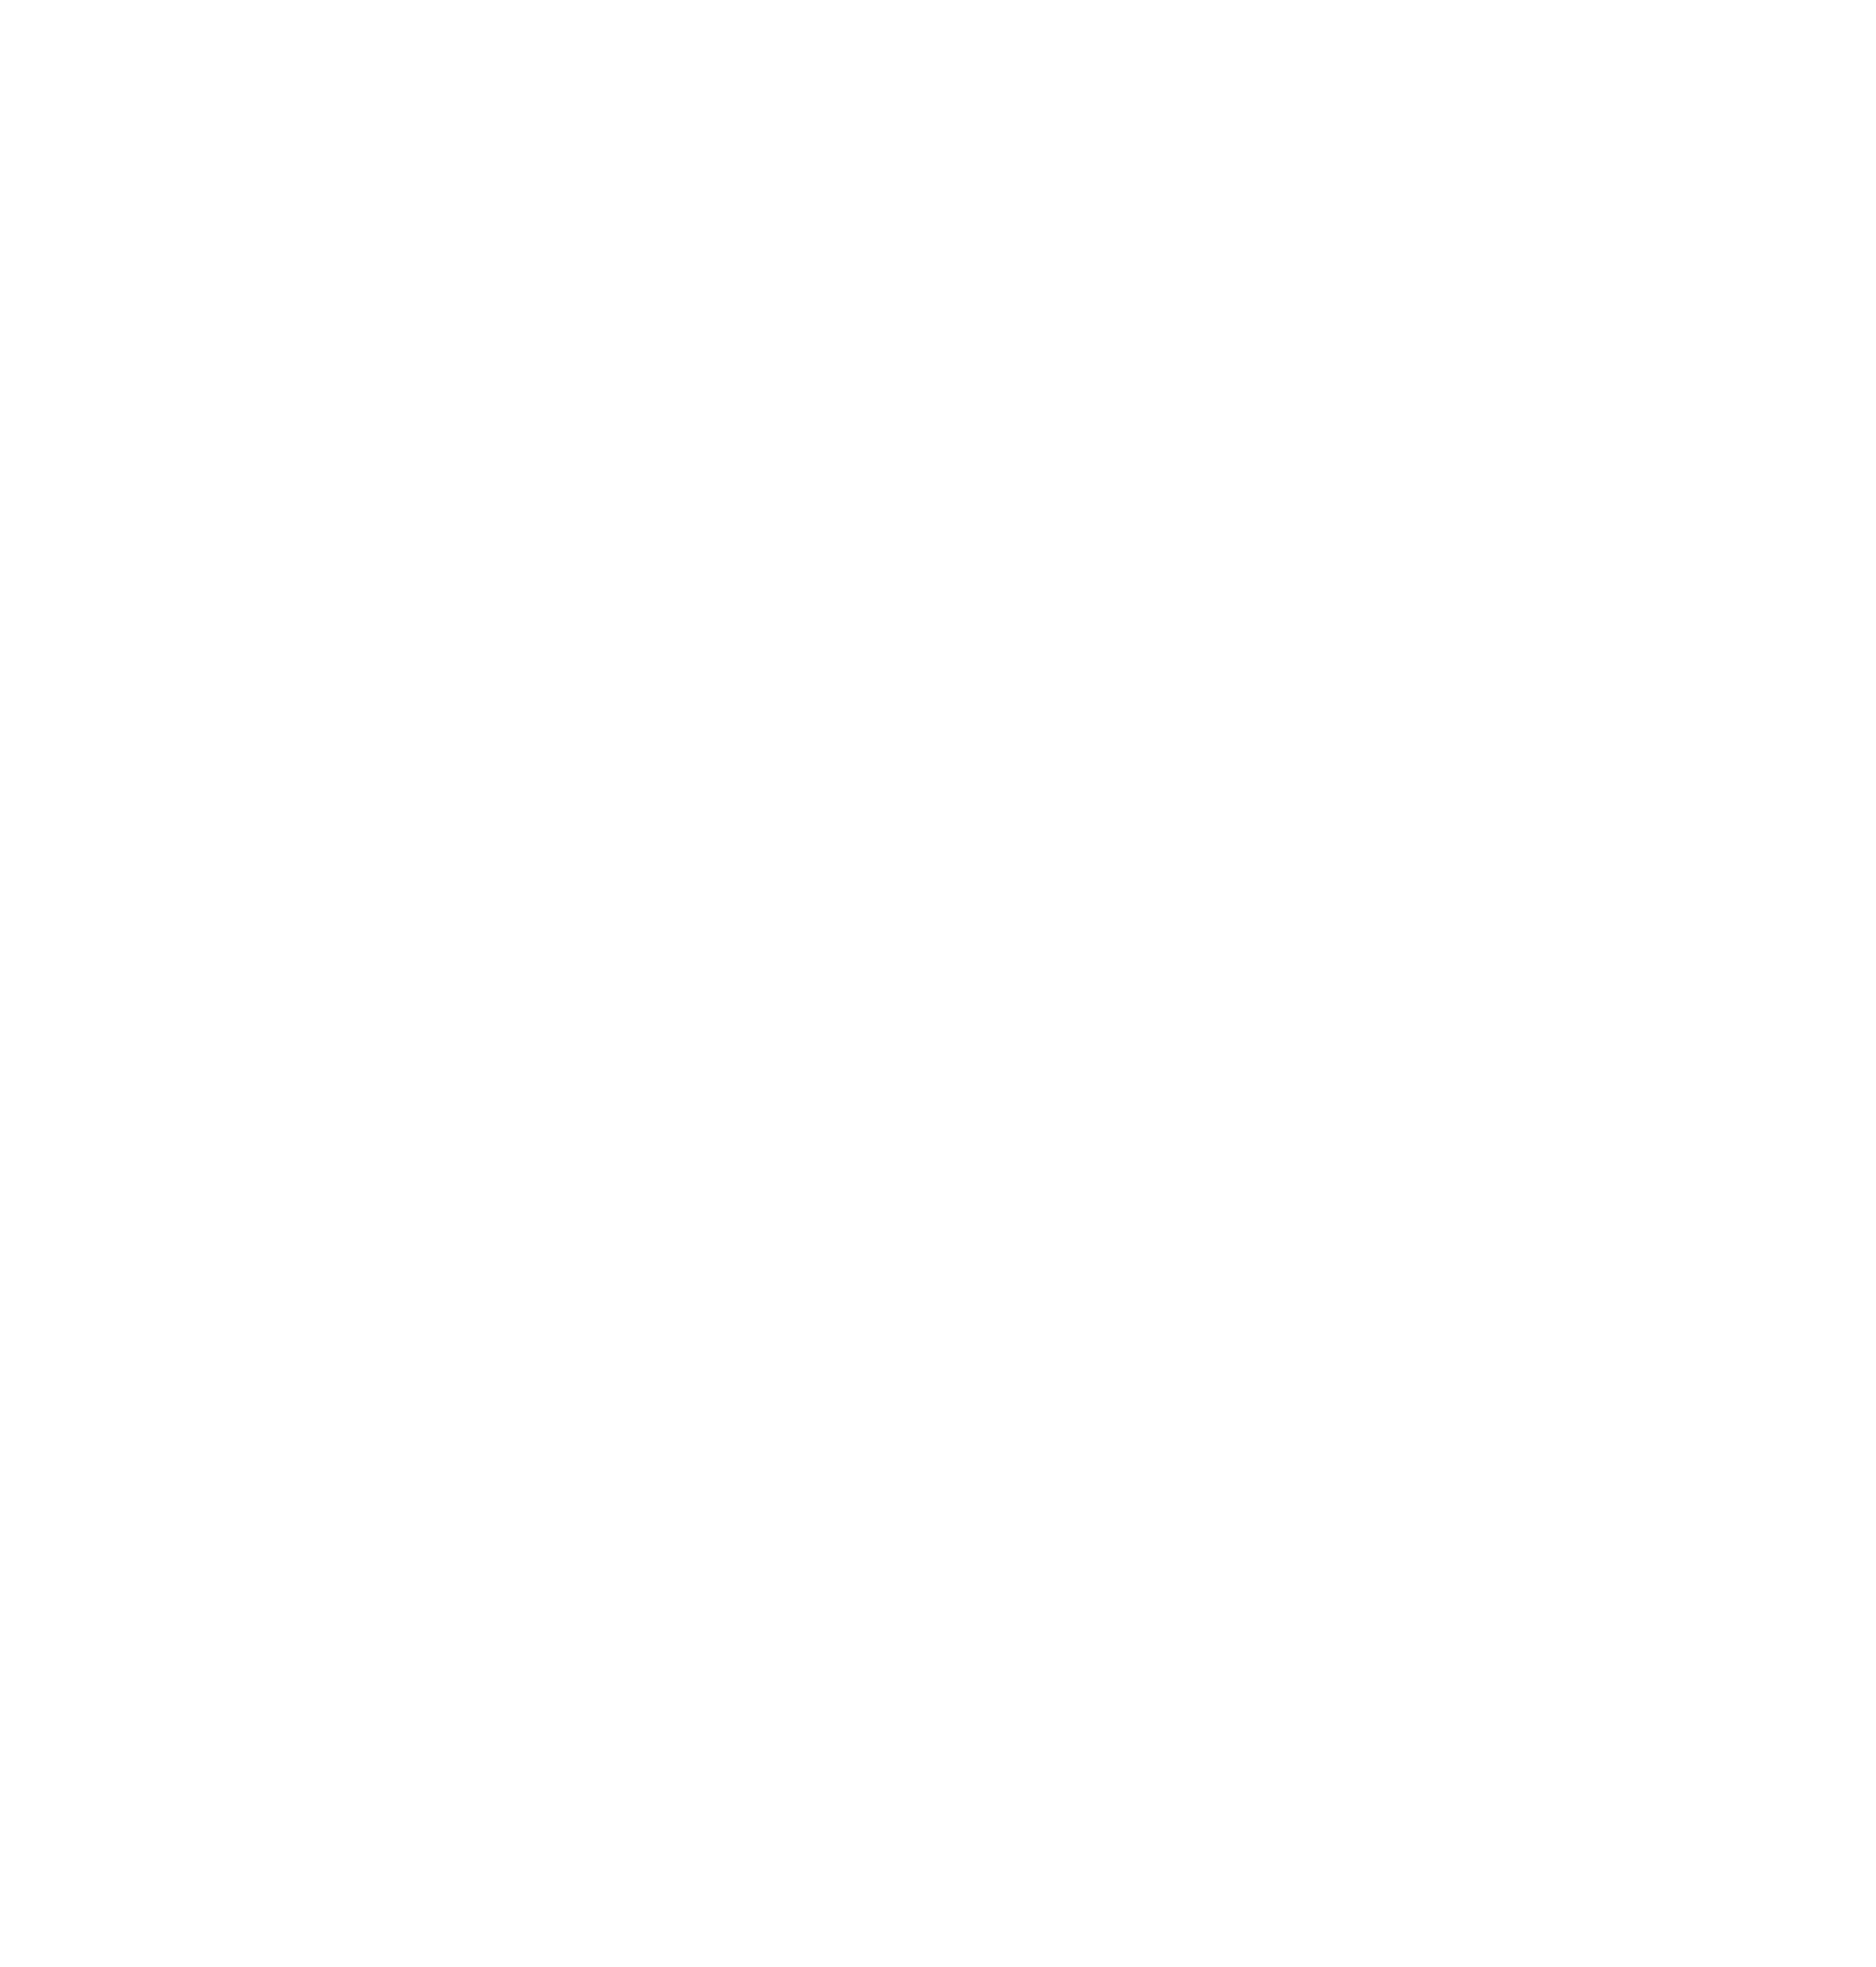 The Mule Tavern